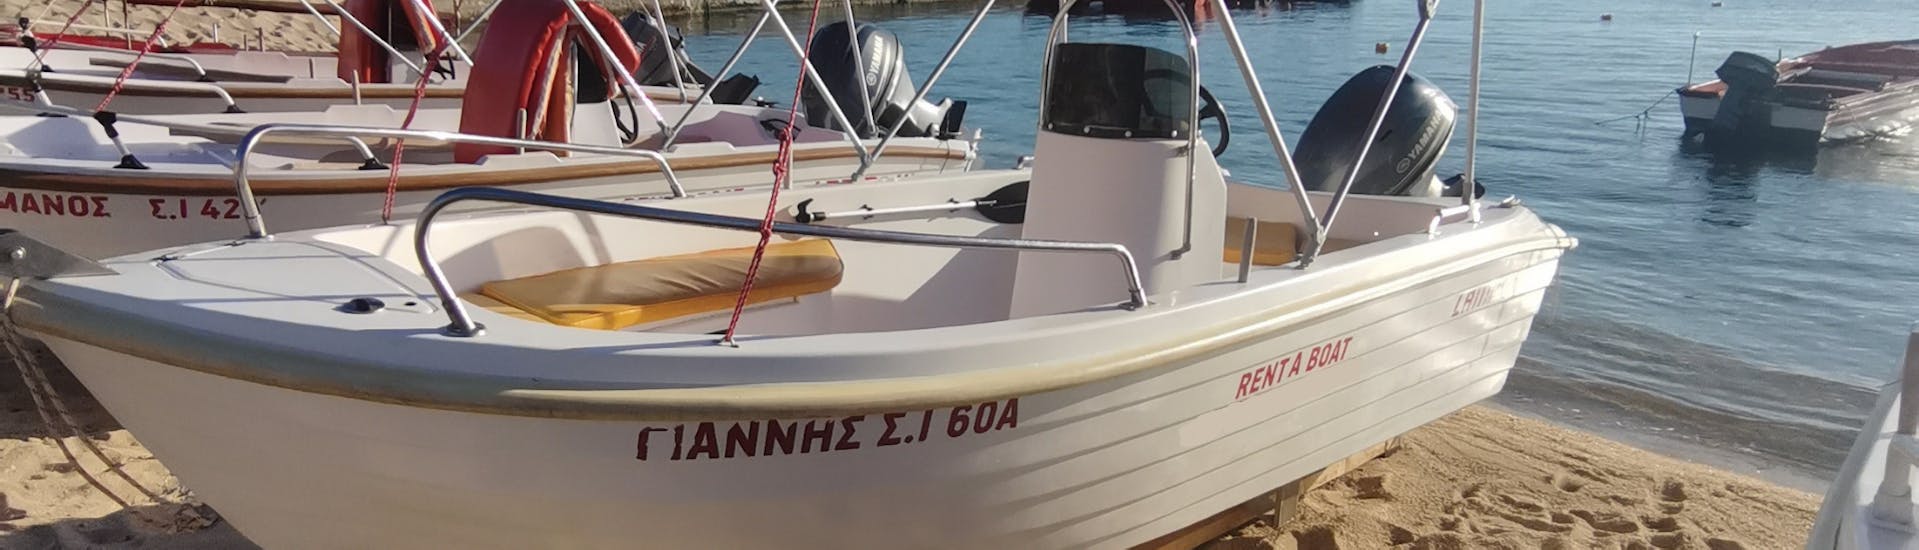 Das Boot liegt am Strand während des Bootsverleihs in Ouranoupoli (bis zu 5 Personen) - Ammouliani & Drenia Inseln.